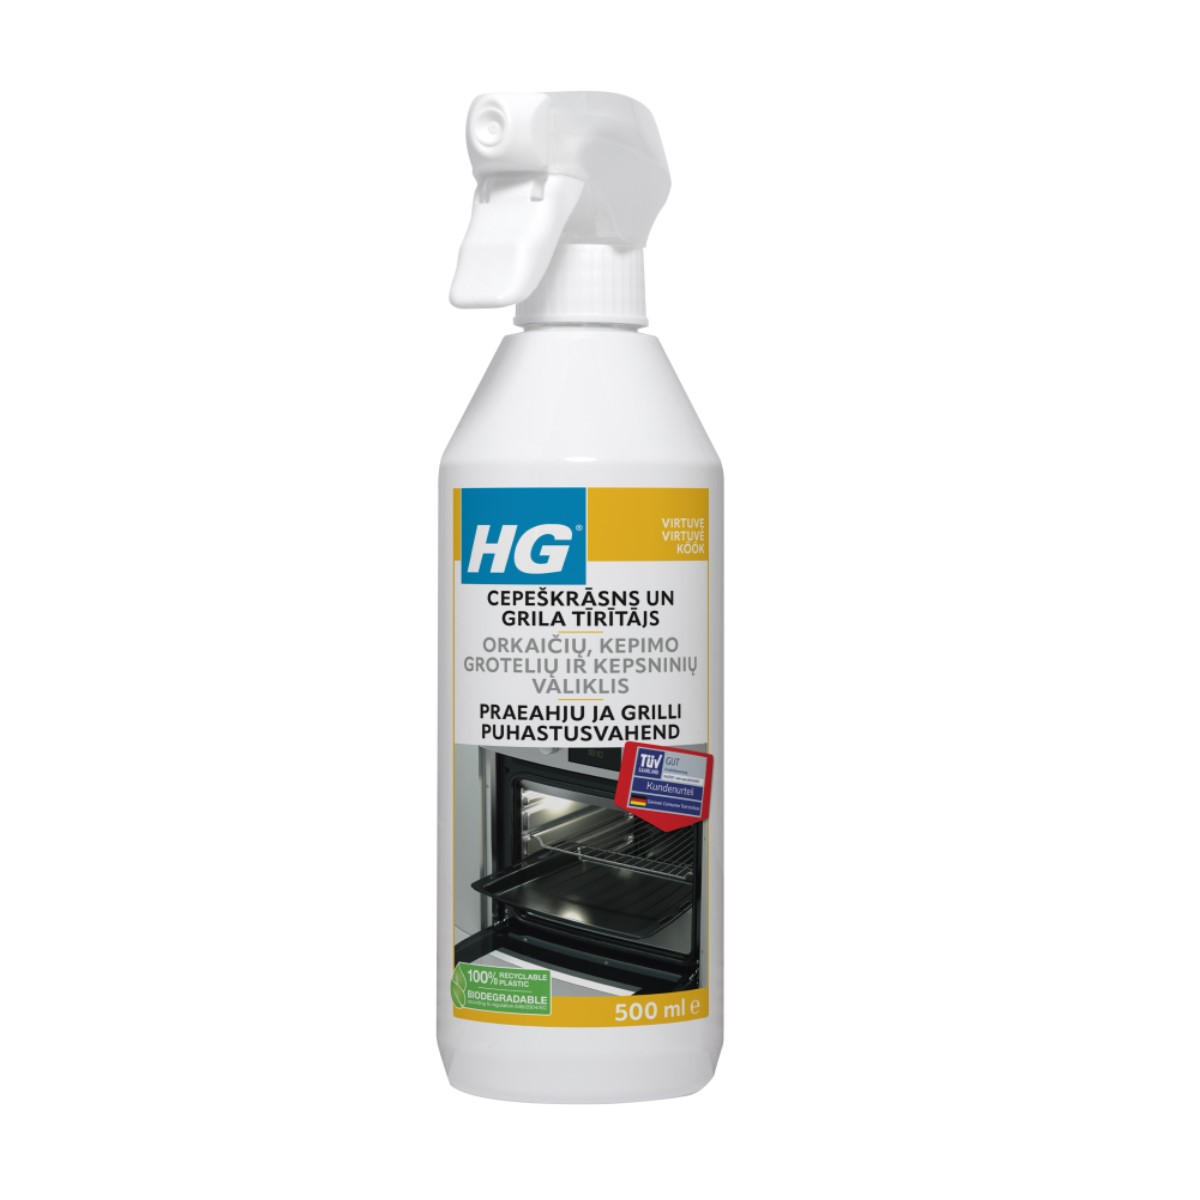 HG Cepeškrāsns un grila tīrītājs 0.5L